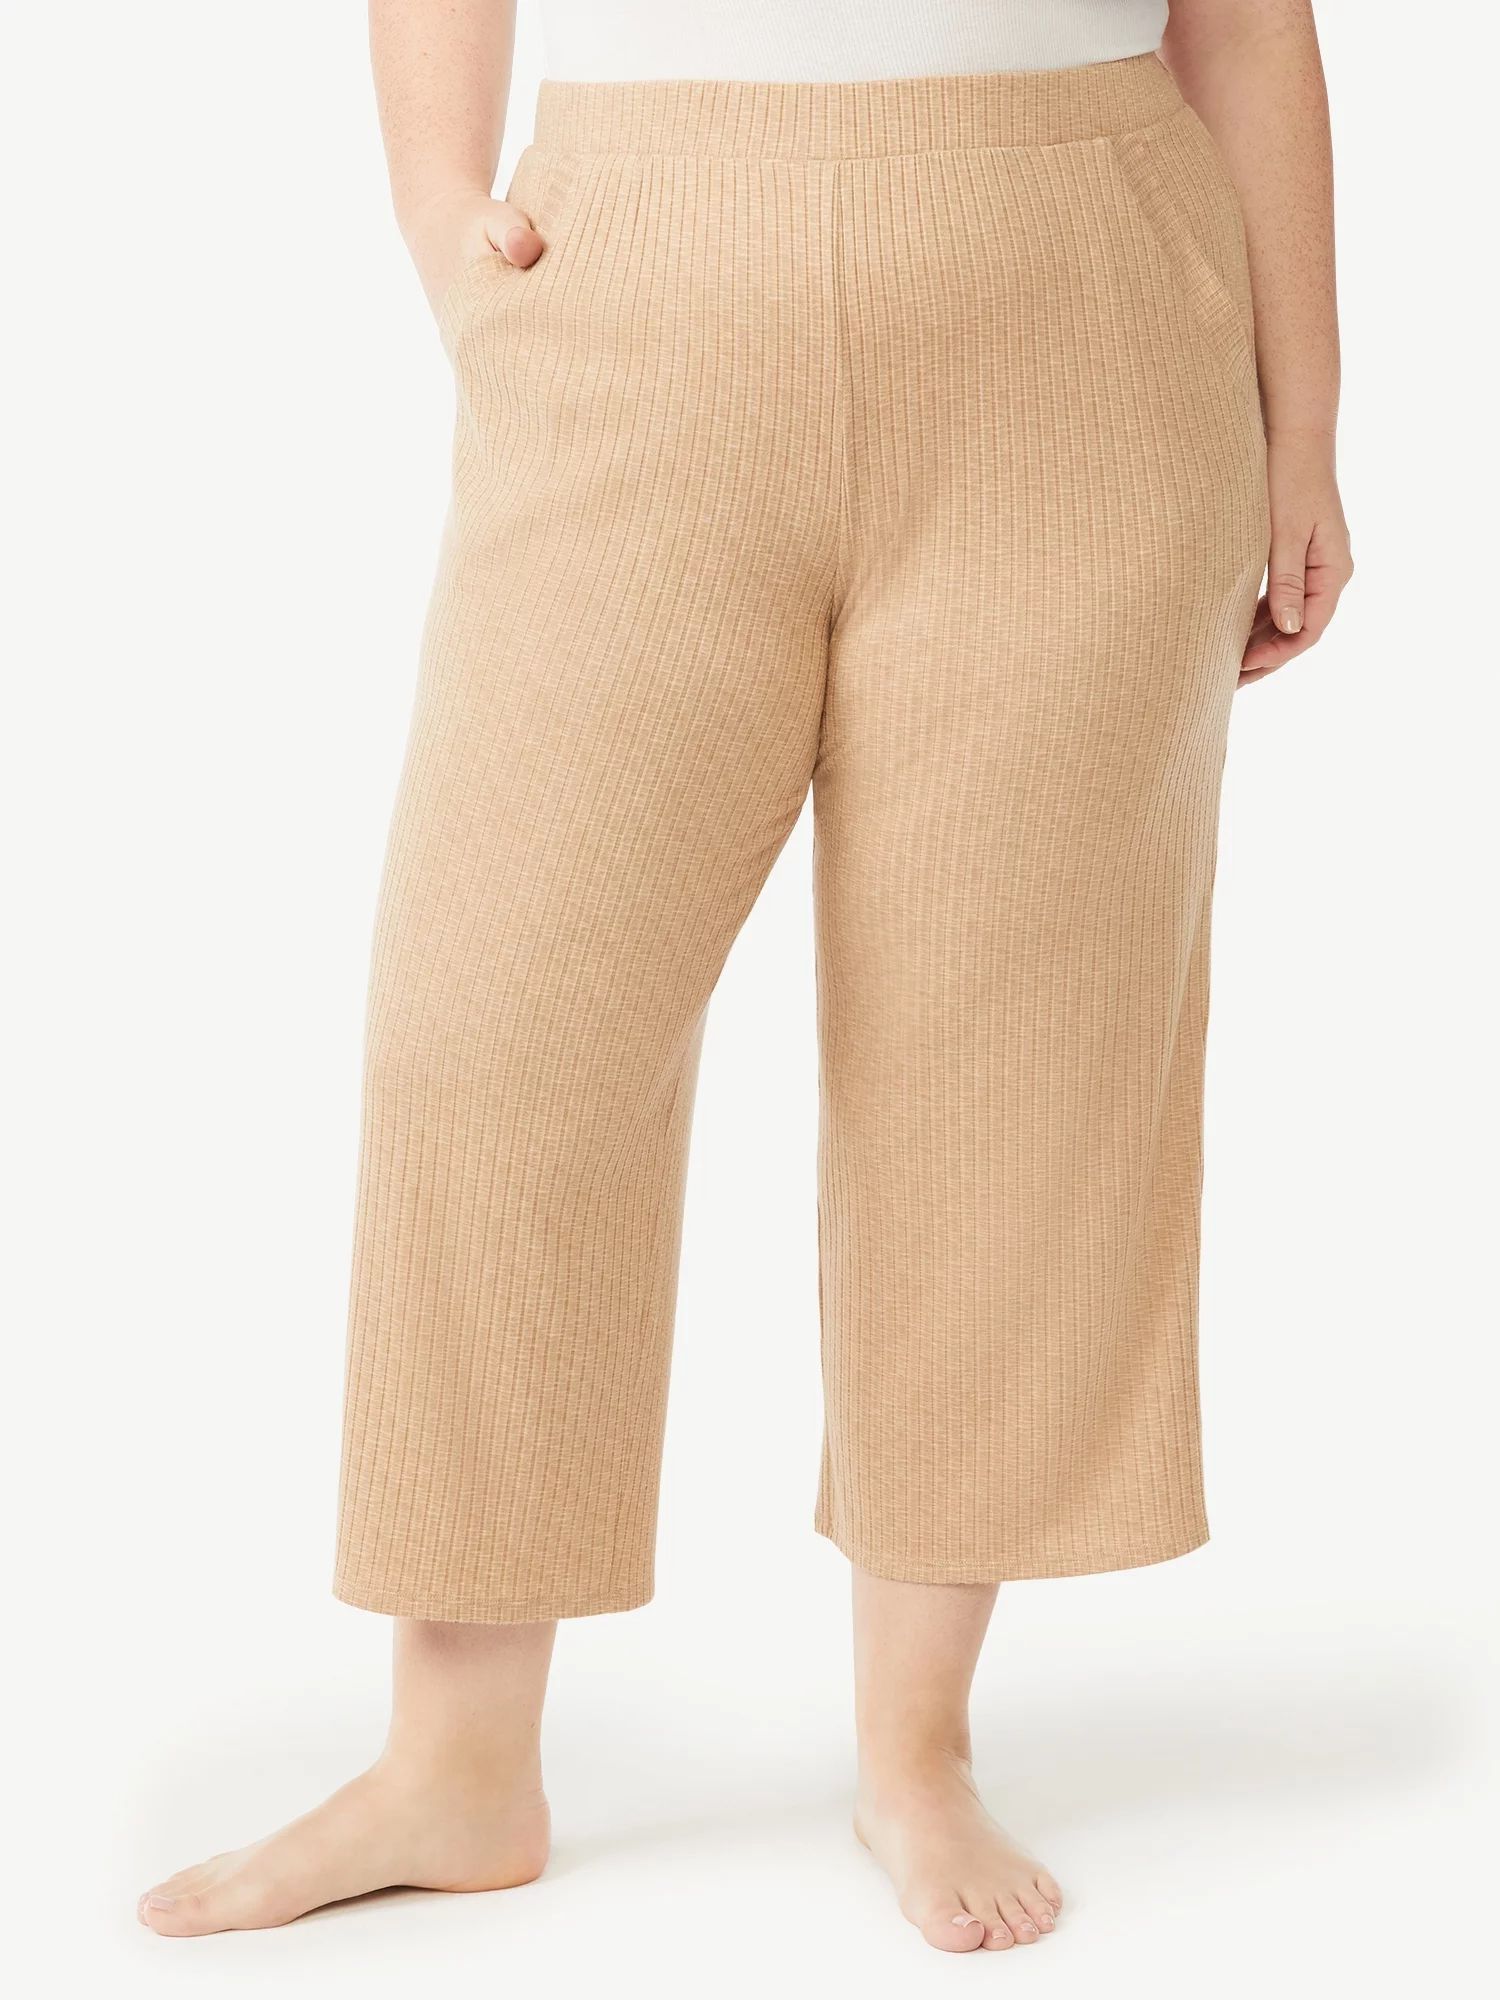 Joyspun Women's Hacci Knit Cropped Pants, Sizes S to 3X | Walmart (US)